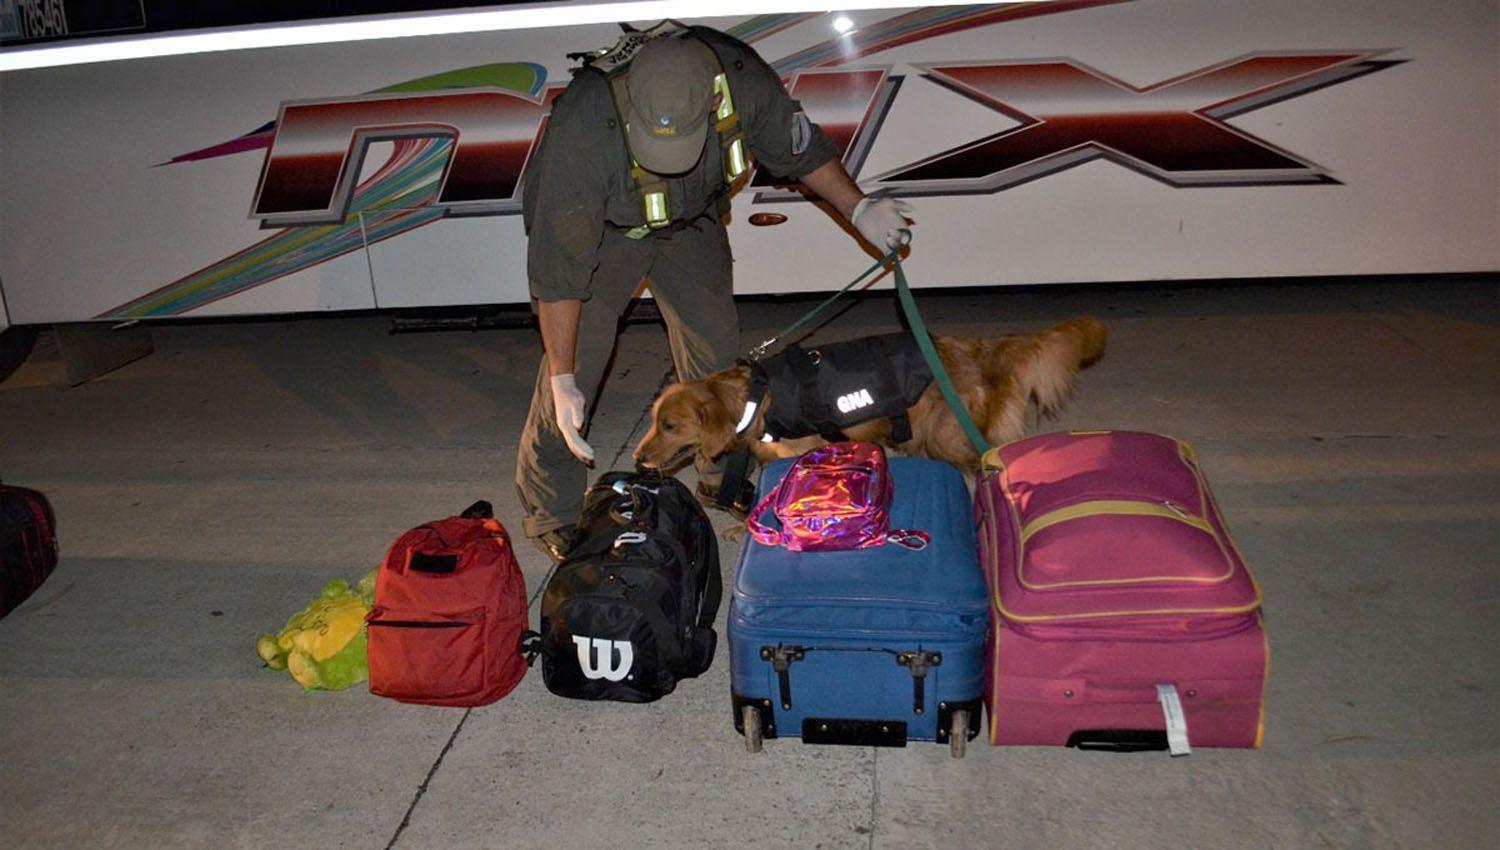 Gendarmes decomisaron maacutes de 3 kilos de cocaiacutena ocultos en un equipaje